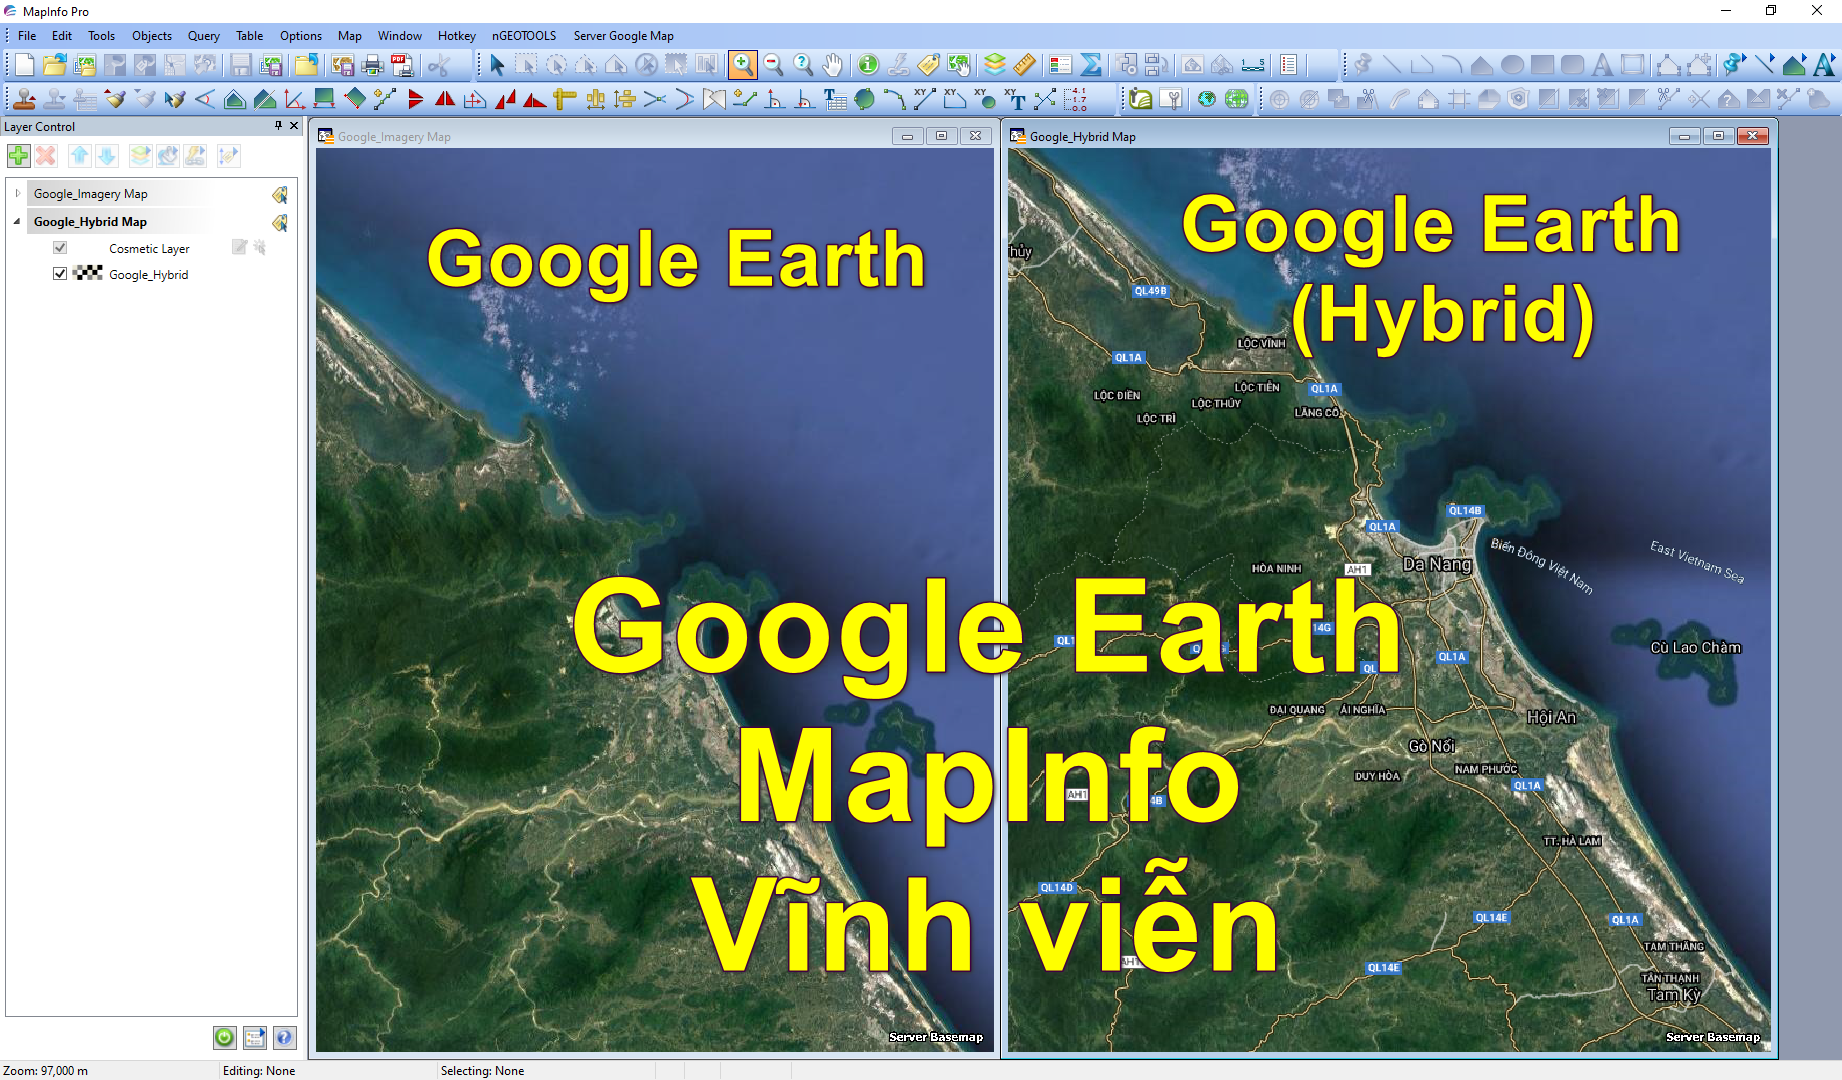 Với Google Earth Mapinfo miễn phí, bạn có thể khám phá toàn cầu và theo dõi vị trí mọi thứ với độ chính xác cao. Hãy tải ứng dụng ngay và khám phá những điều kỳ diệu trên thế giới chỉ trong vài thao tác đơn giản.